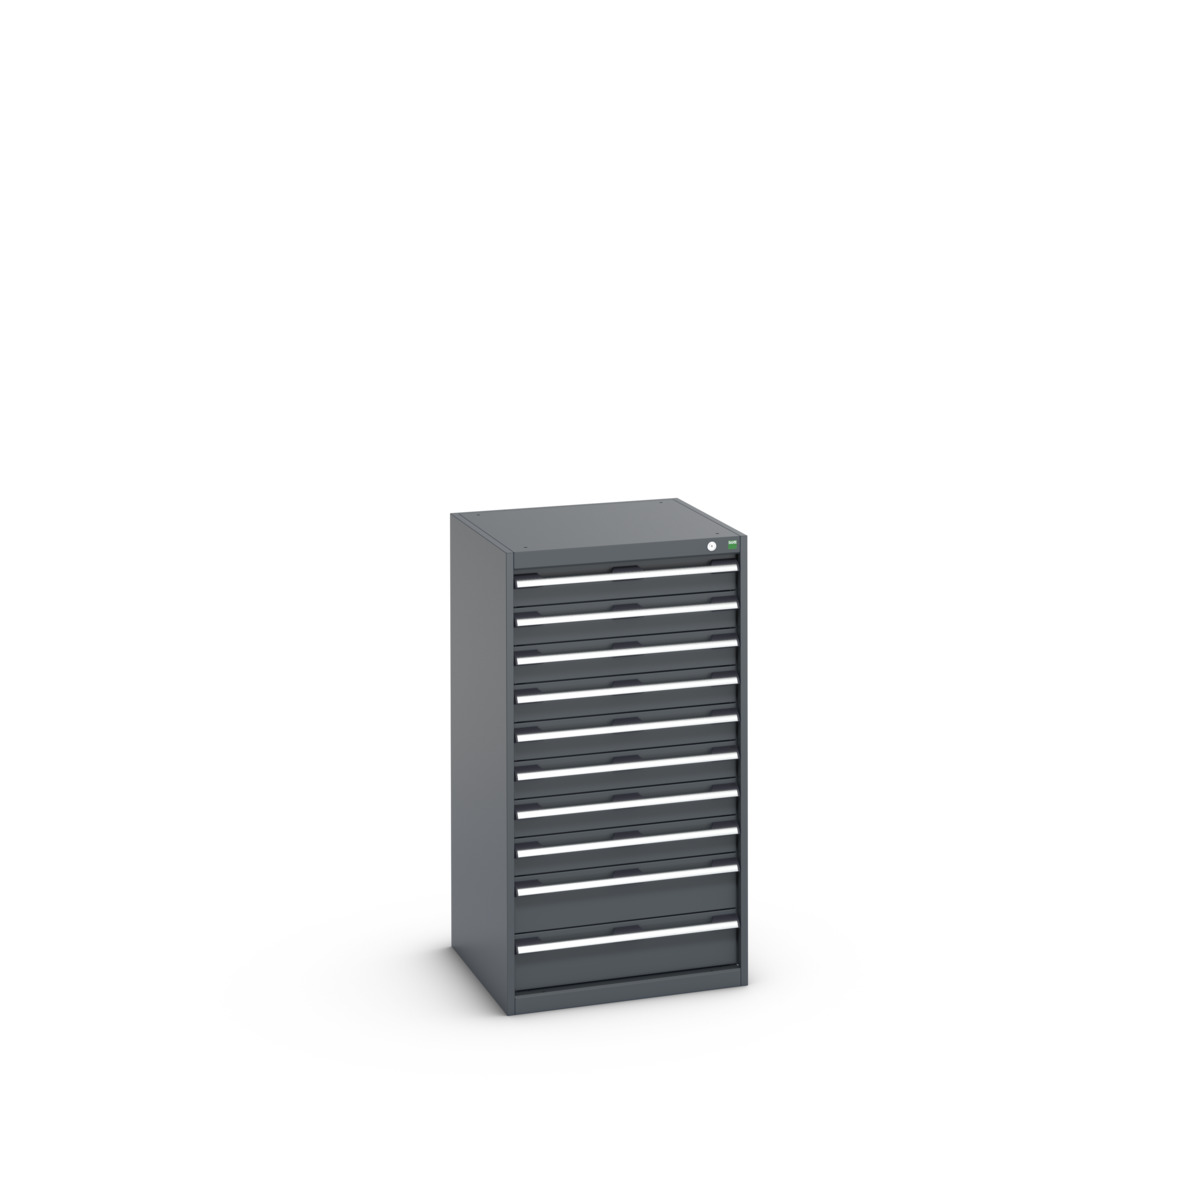 40019075.77V - cubio drawer cabinet